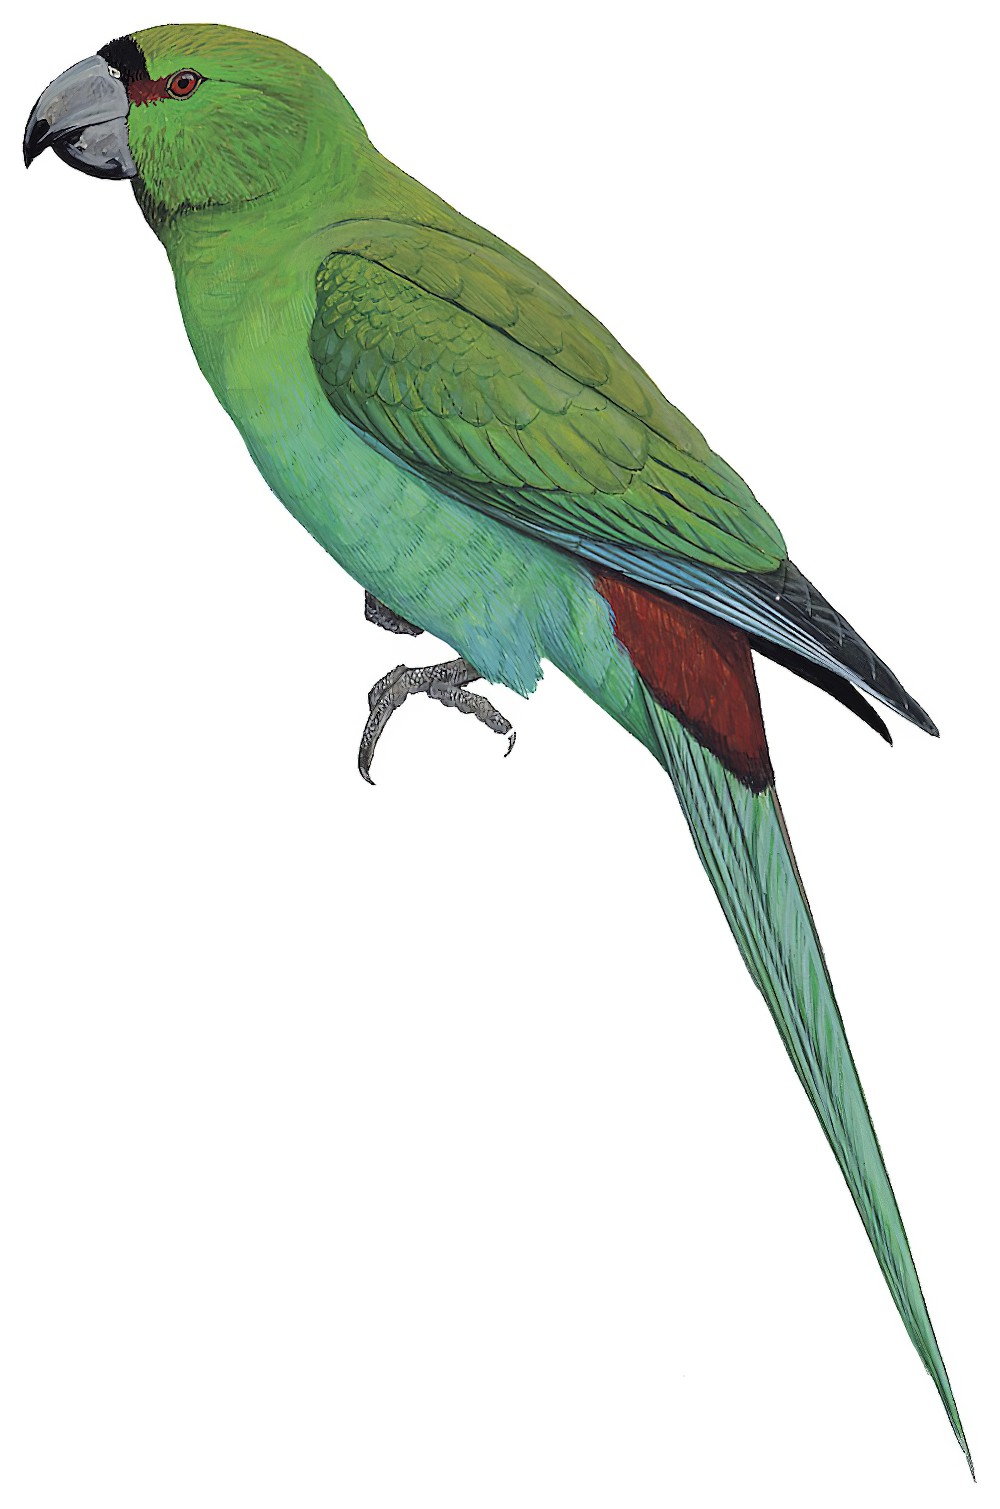 Black-fronted Parakeet / Cyanoramphus zealandicus